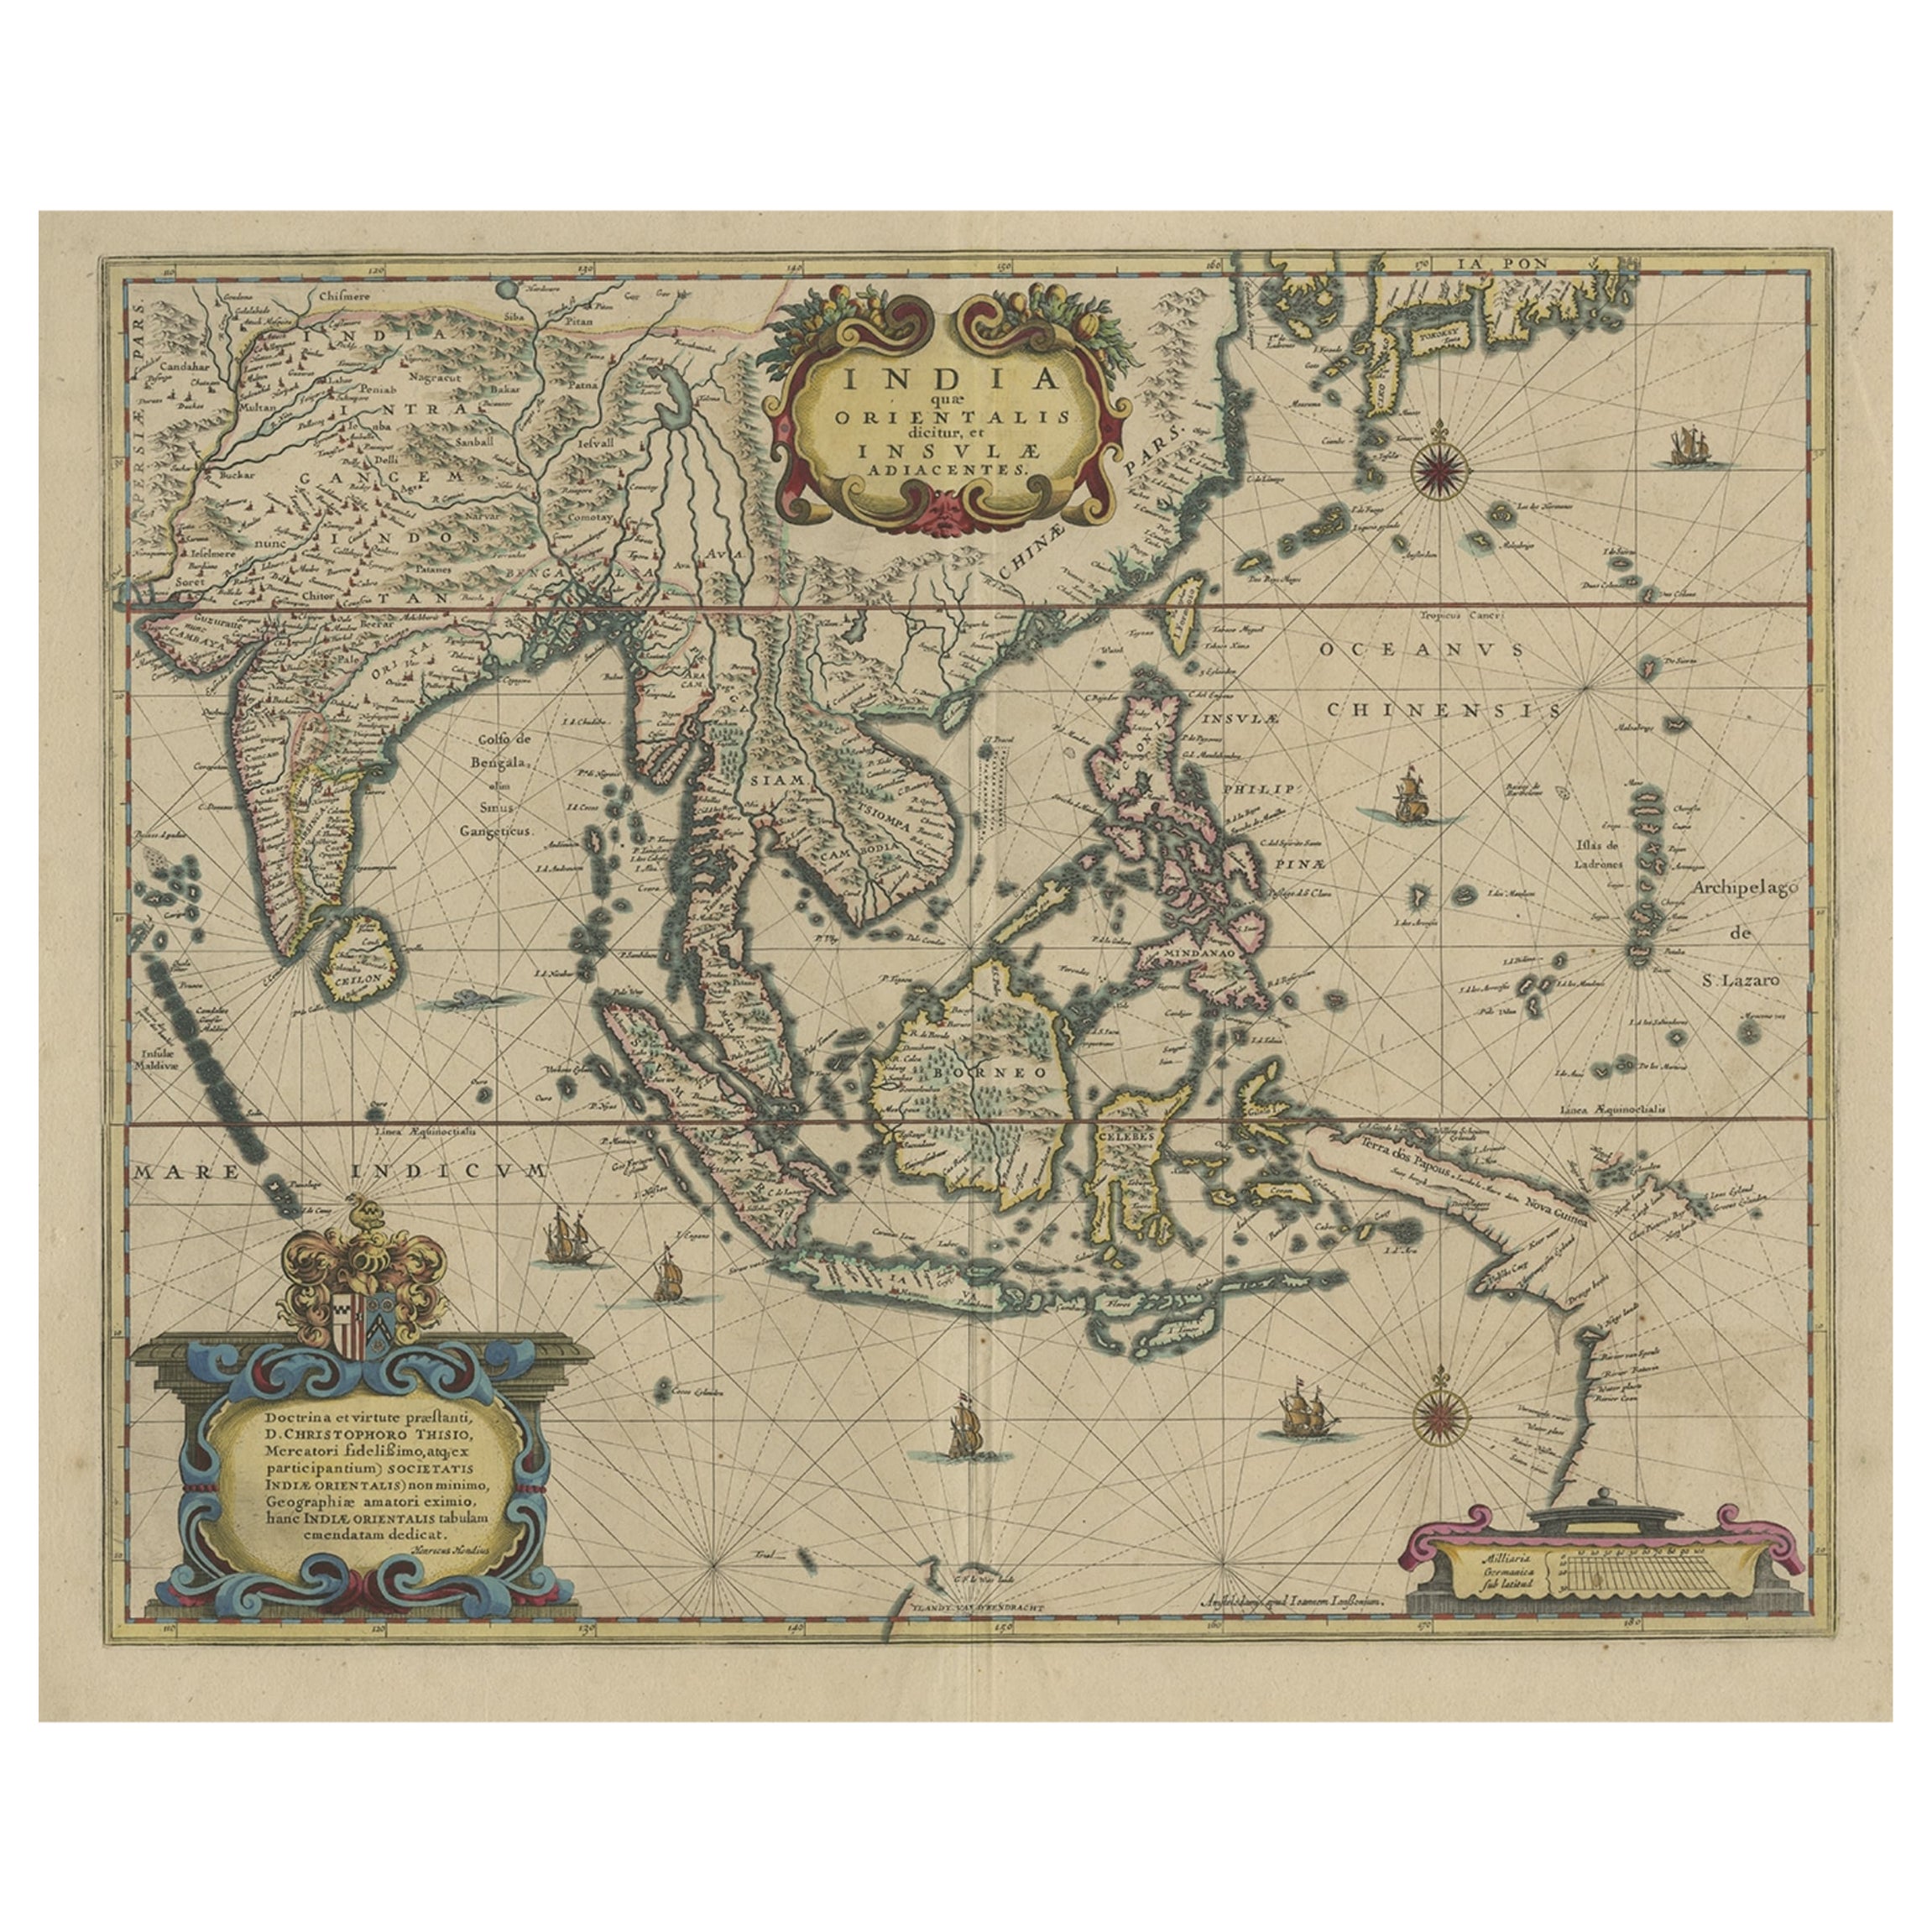 Carte originale et colorée à la main des Indes orientales et de l'Asie du Sud-Est, vers 1644